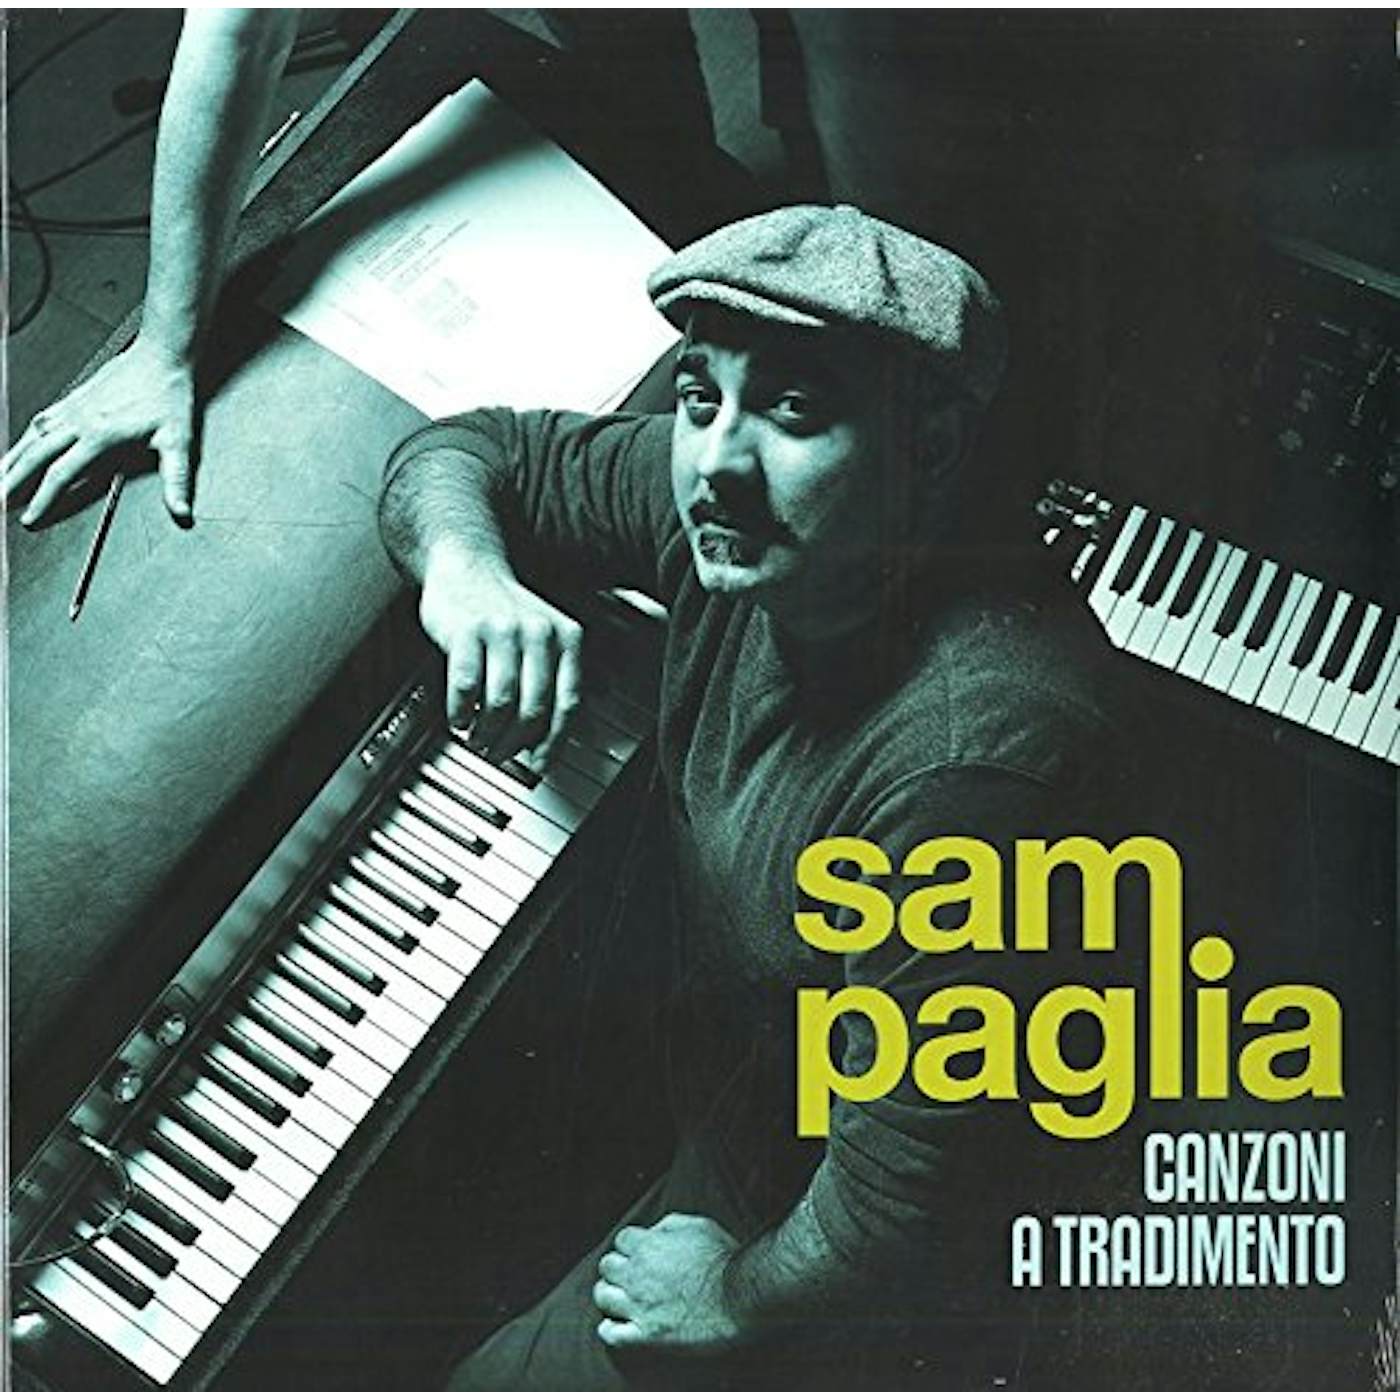 Sam Paglia Canzoni a tradimento Vinyl Record